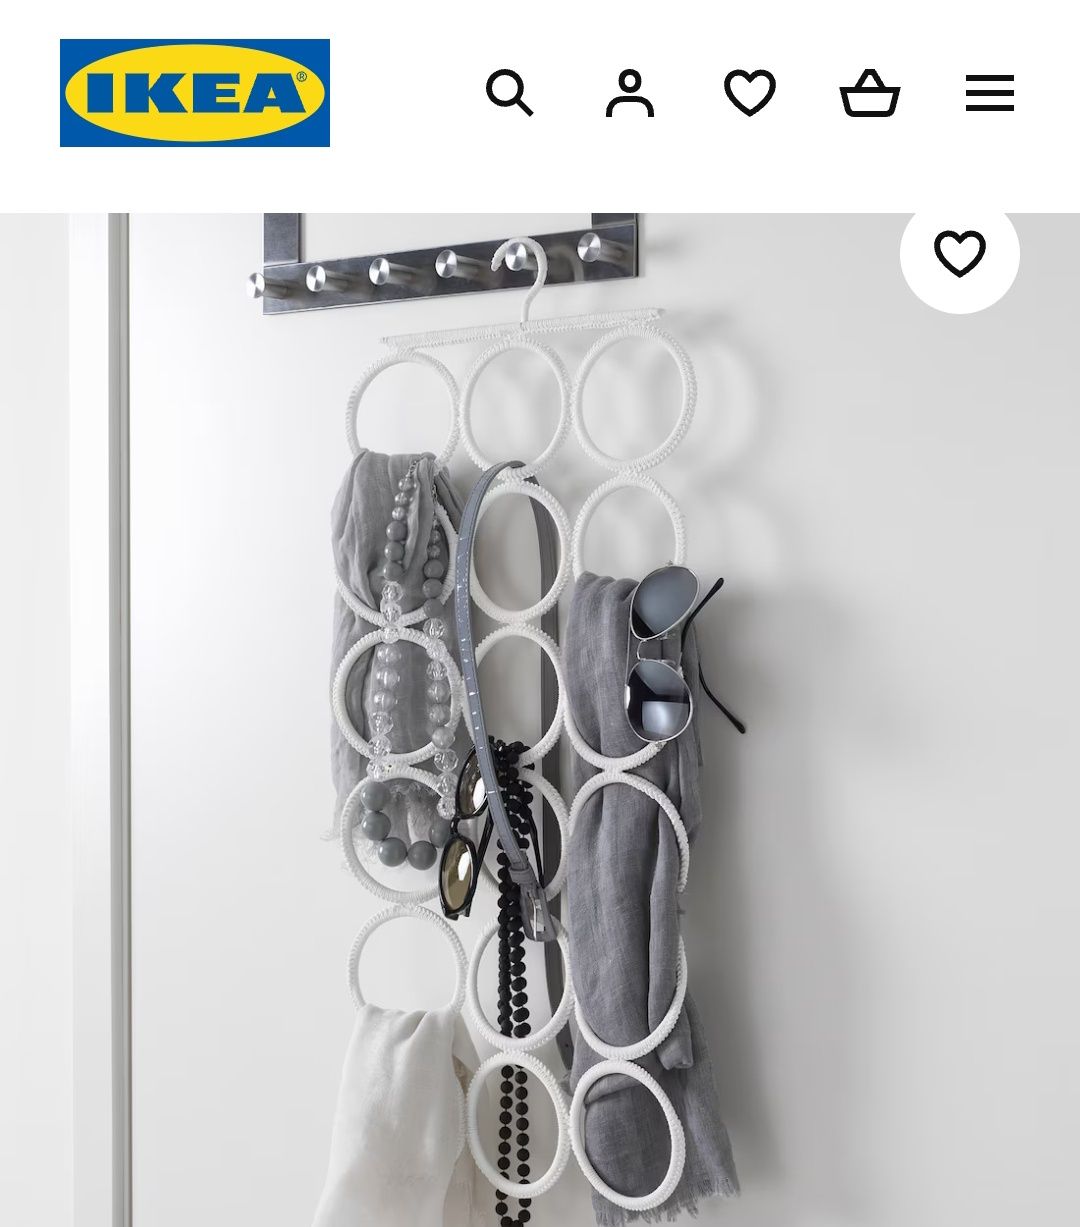 Wieszak Ikea Komplement na krawaty szaliki akcesoria